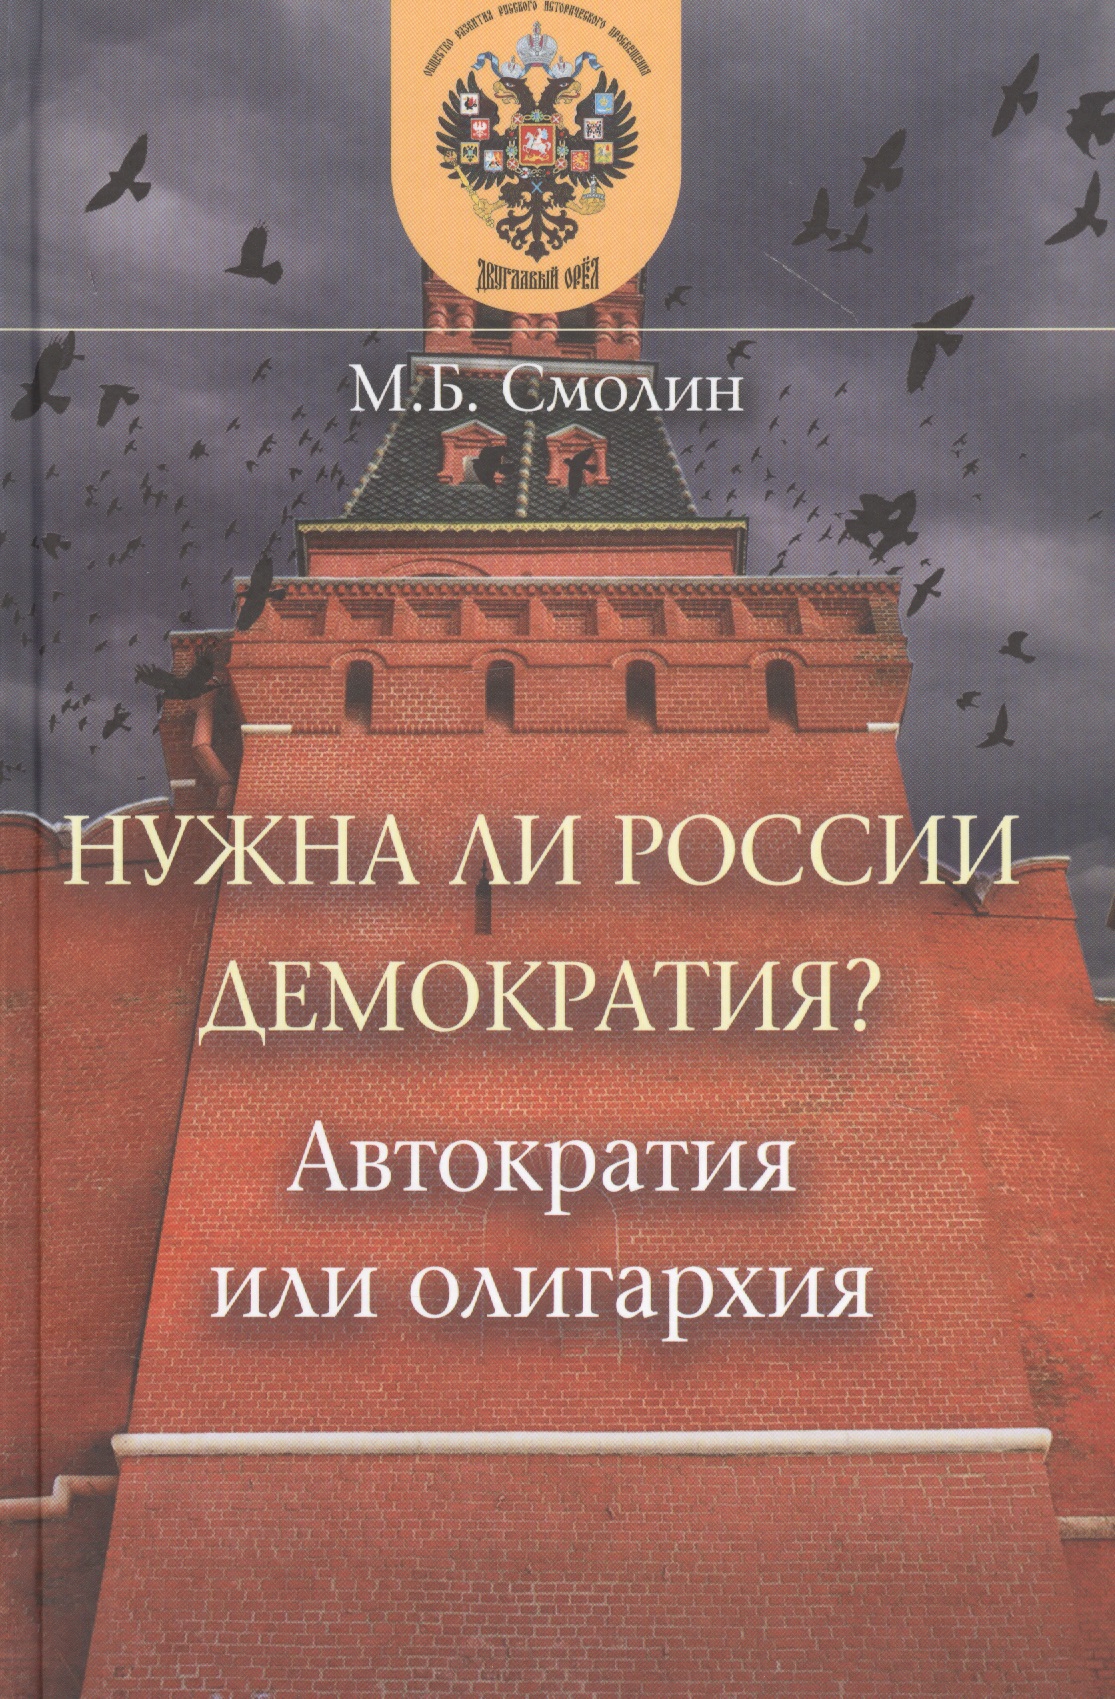 Смолин Михаил Борисович - Нужна ли России демократия? Автократия или олигархия